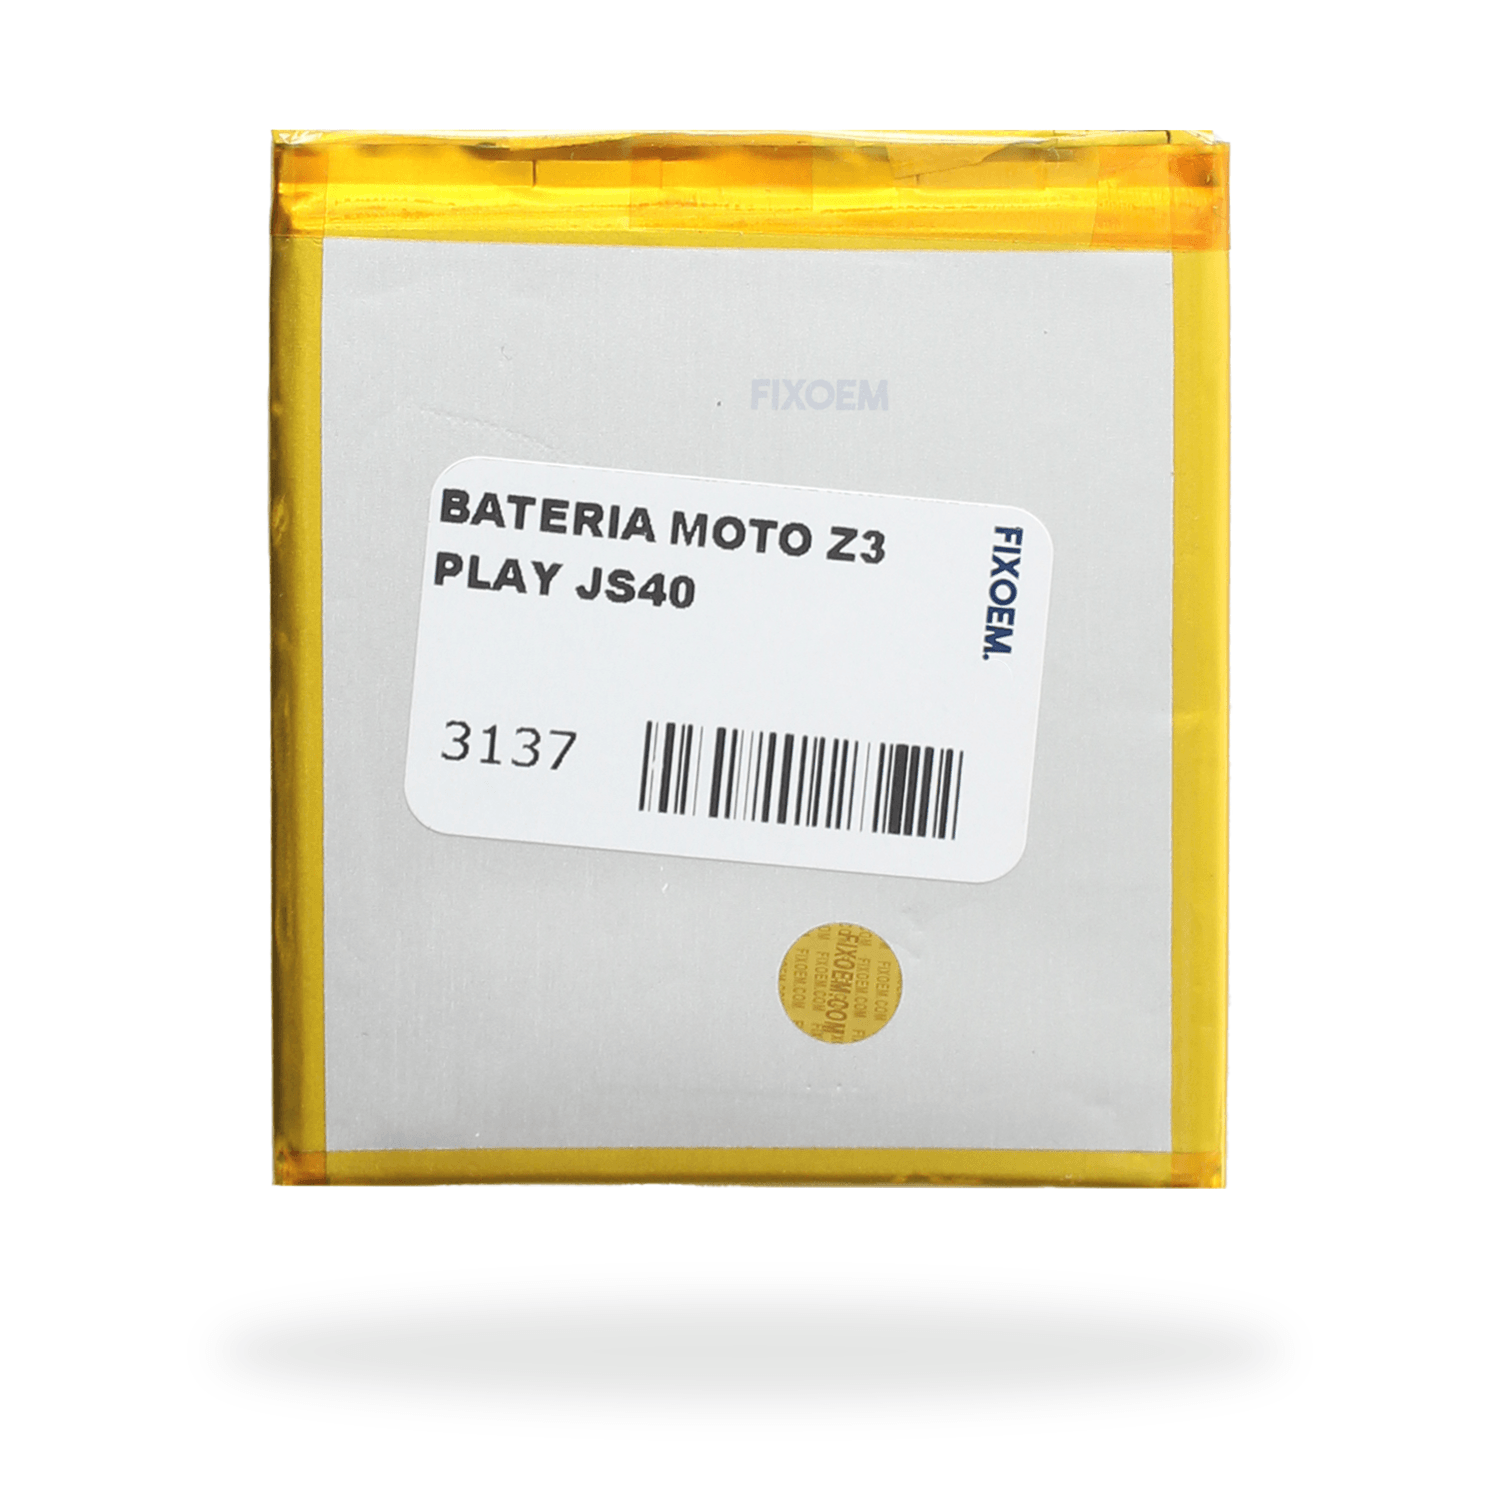 Bateria Moto Z3 Play Xt1929 Js40. a solo $ 120.00 Refaccion y puestos celulares, refurbish y microelectronica.- FixOEM